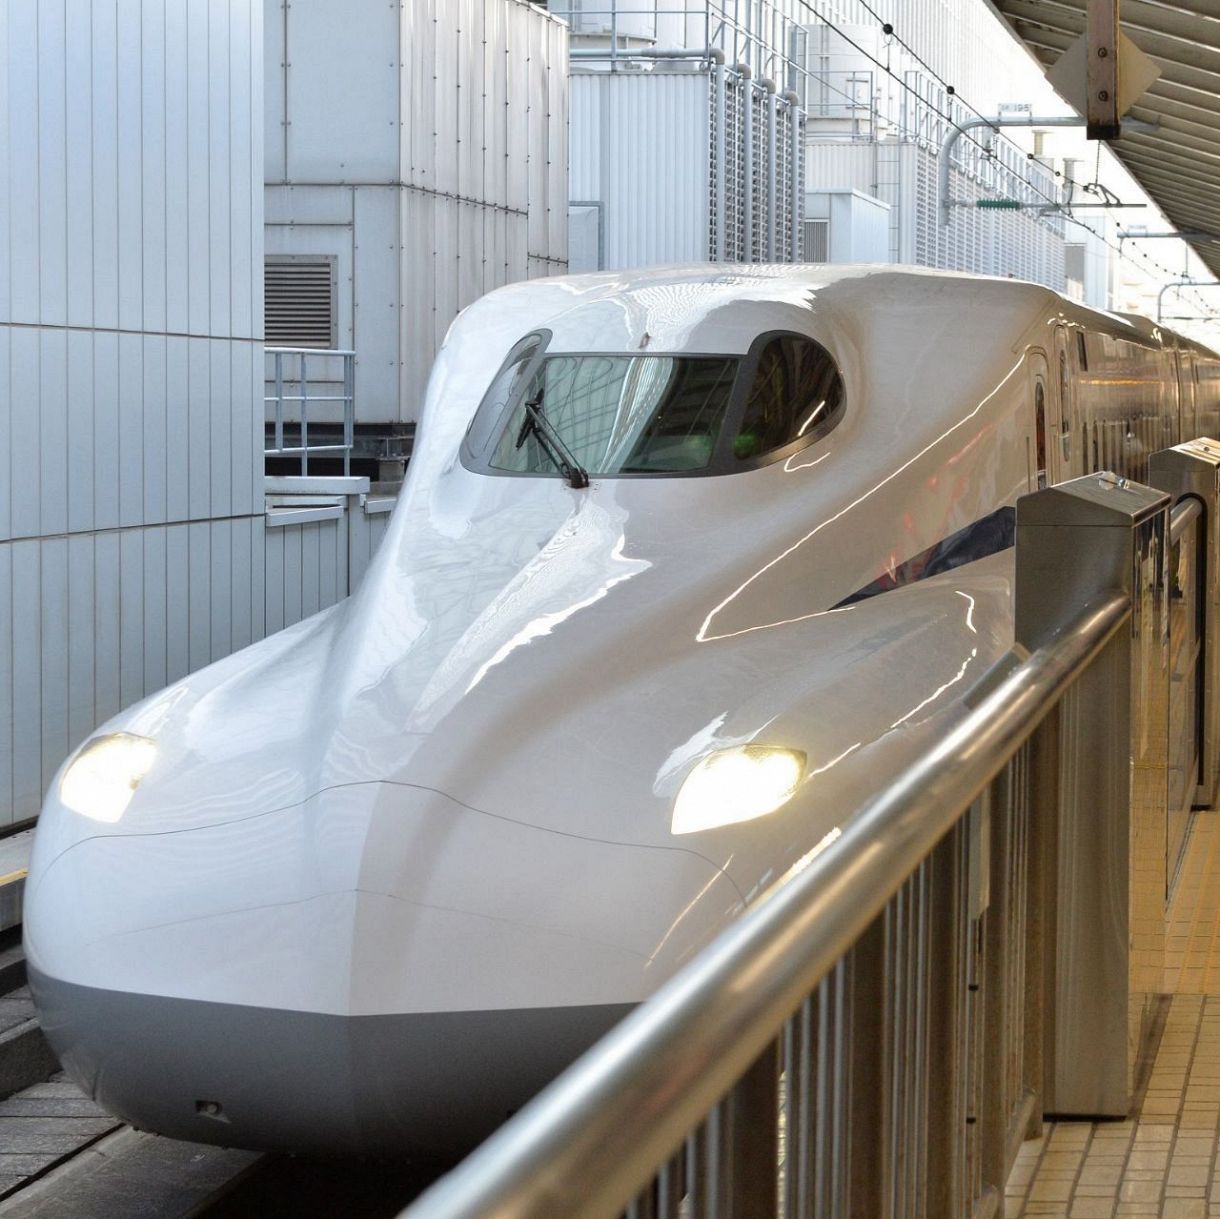 東海道新幹線の運転士 150kmで走行中トイレへ ３分間運転席離れる ｊｒ東海が処分検討 東京新聞 Tokyo Web